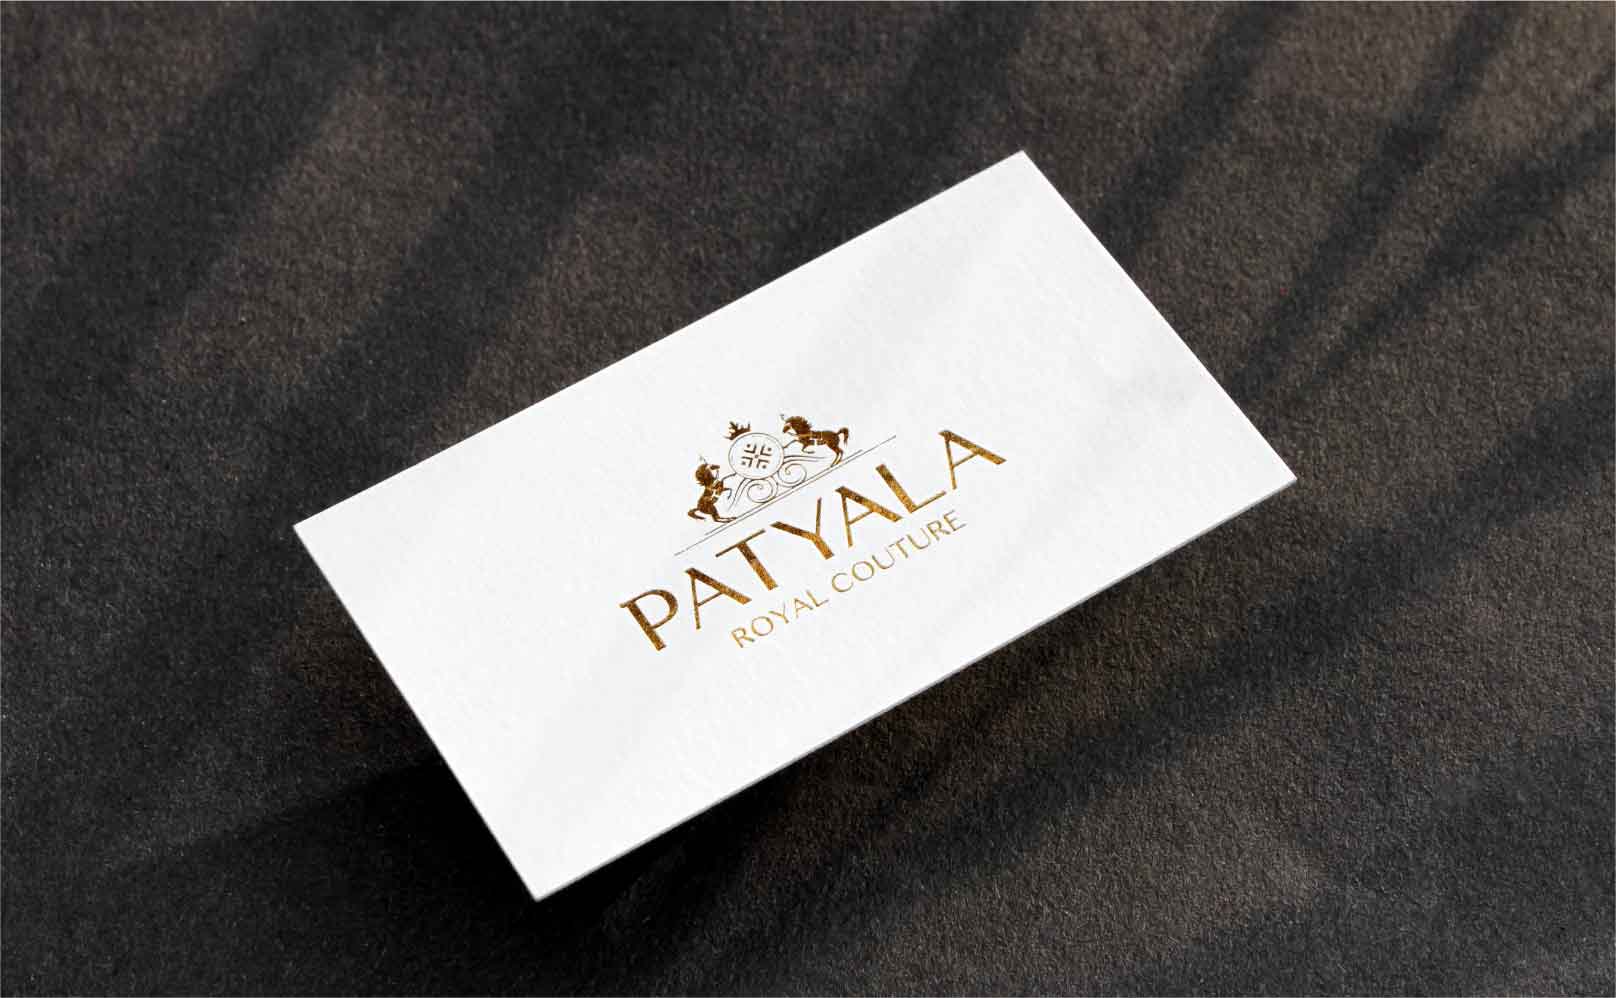 Patyala